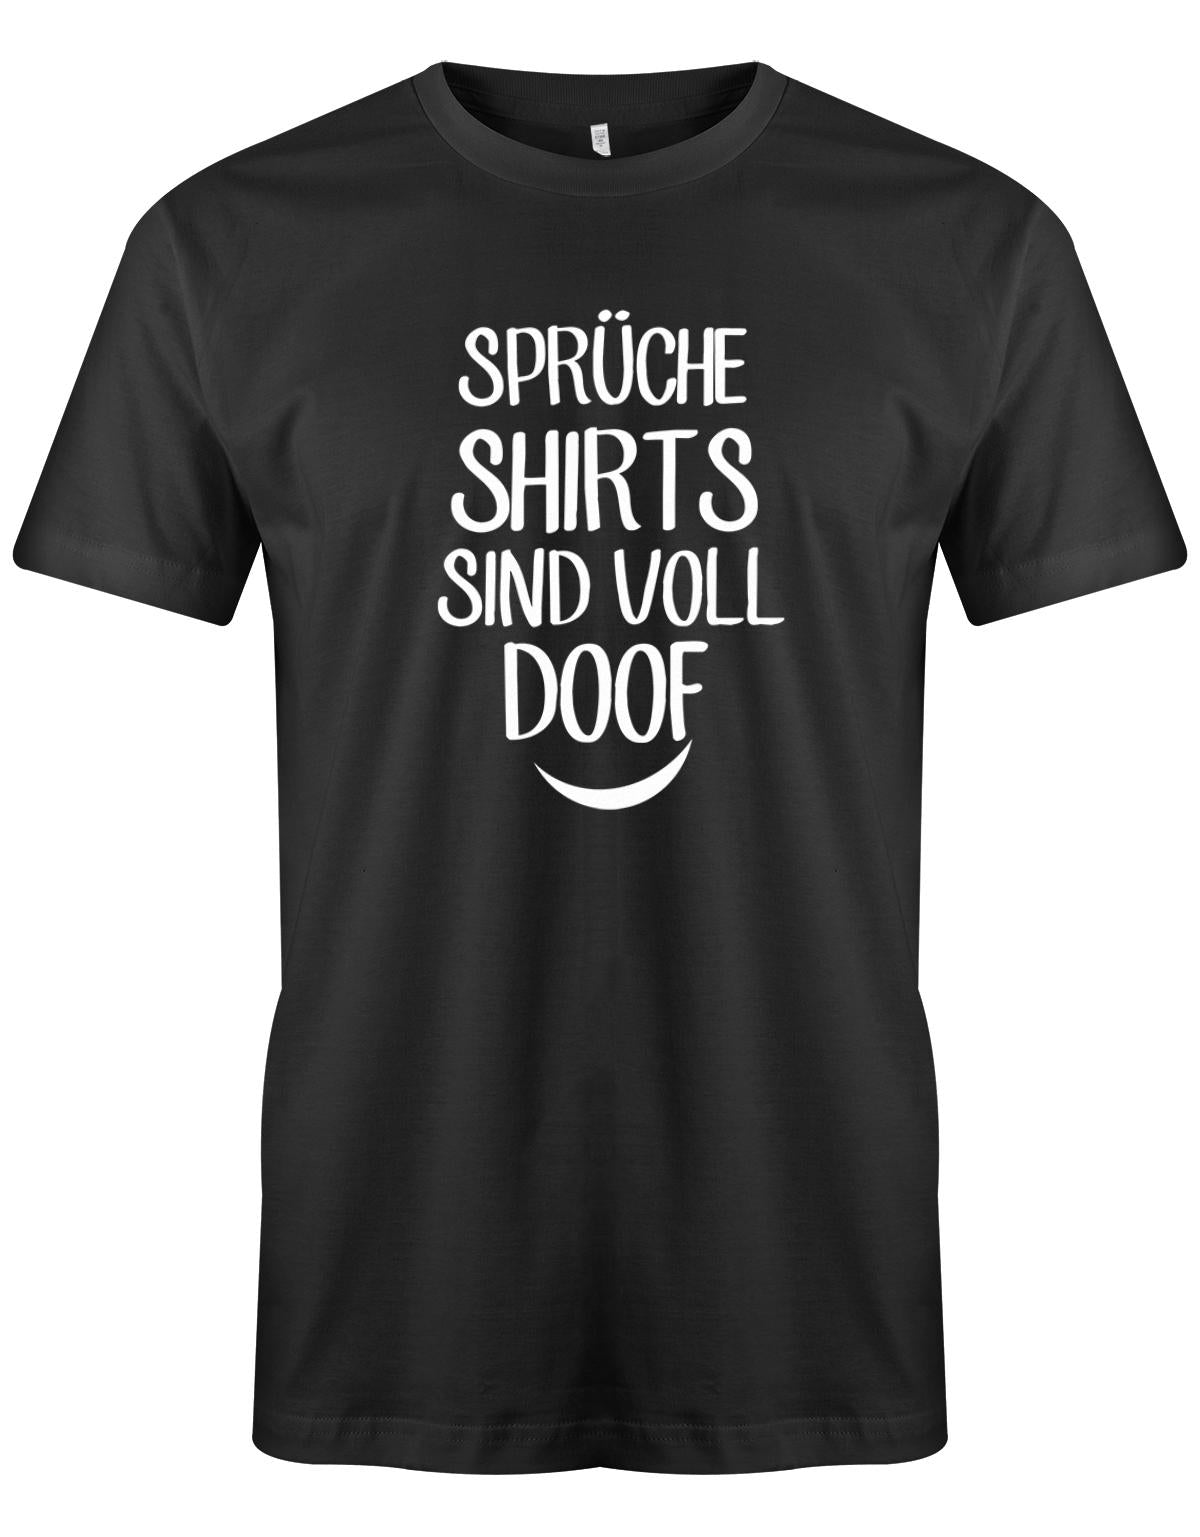 Spr-che-shirts-sind-voll-doof-Herren-Shirt-SCharz